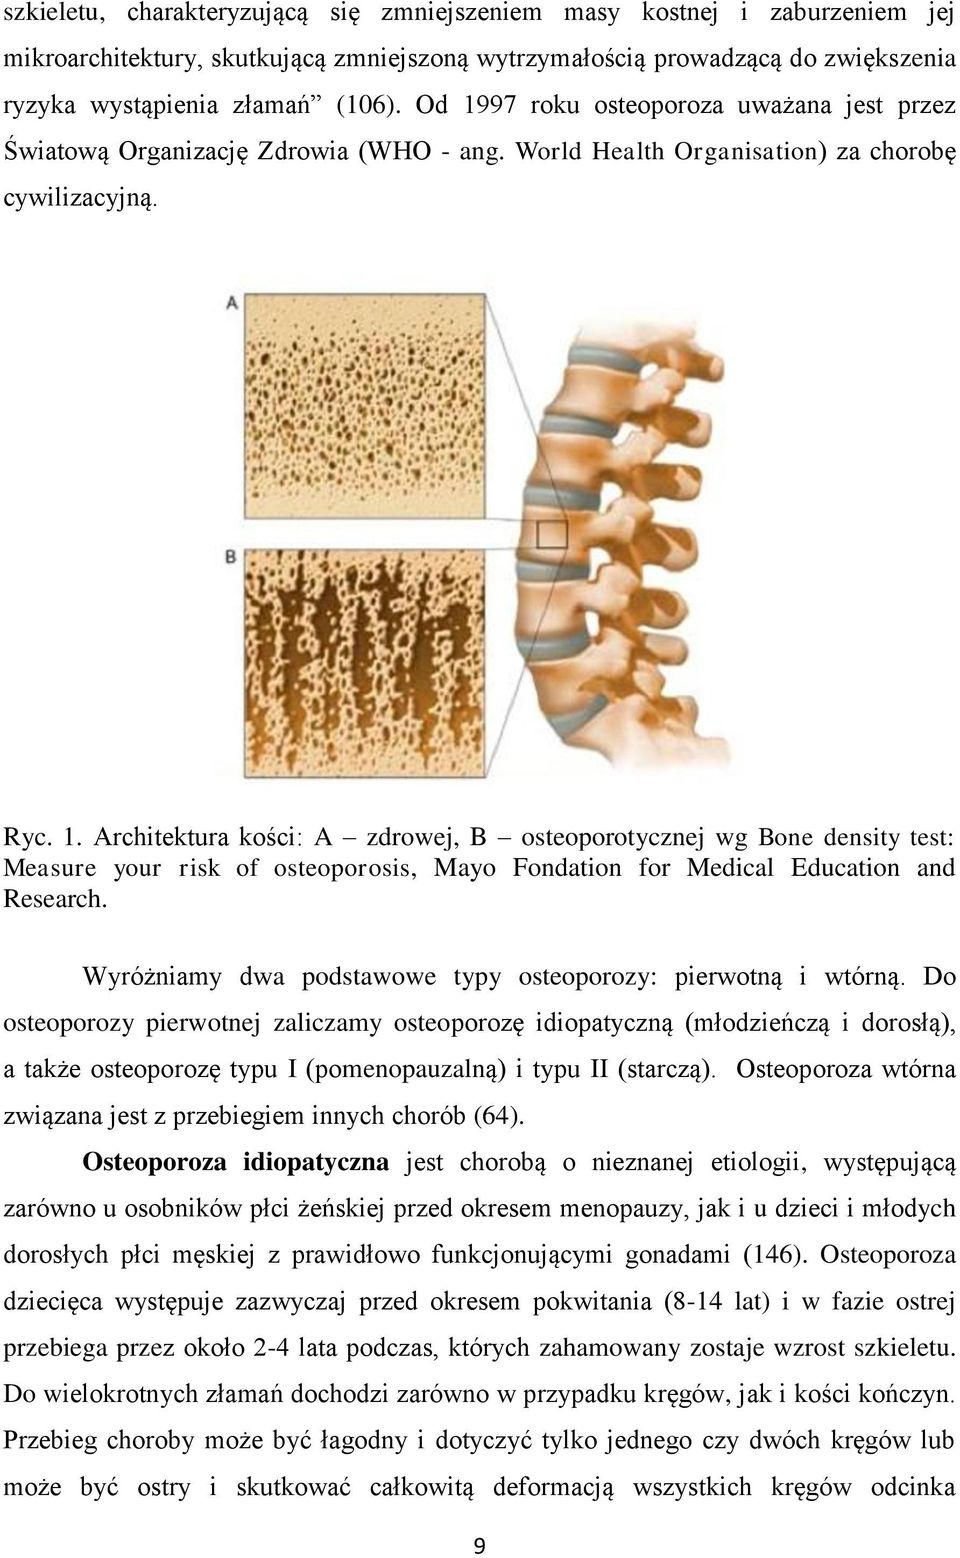 Wyróżniamy dwa podstawowe typy osteoporozy: pierwotną i wtórną.